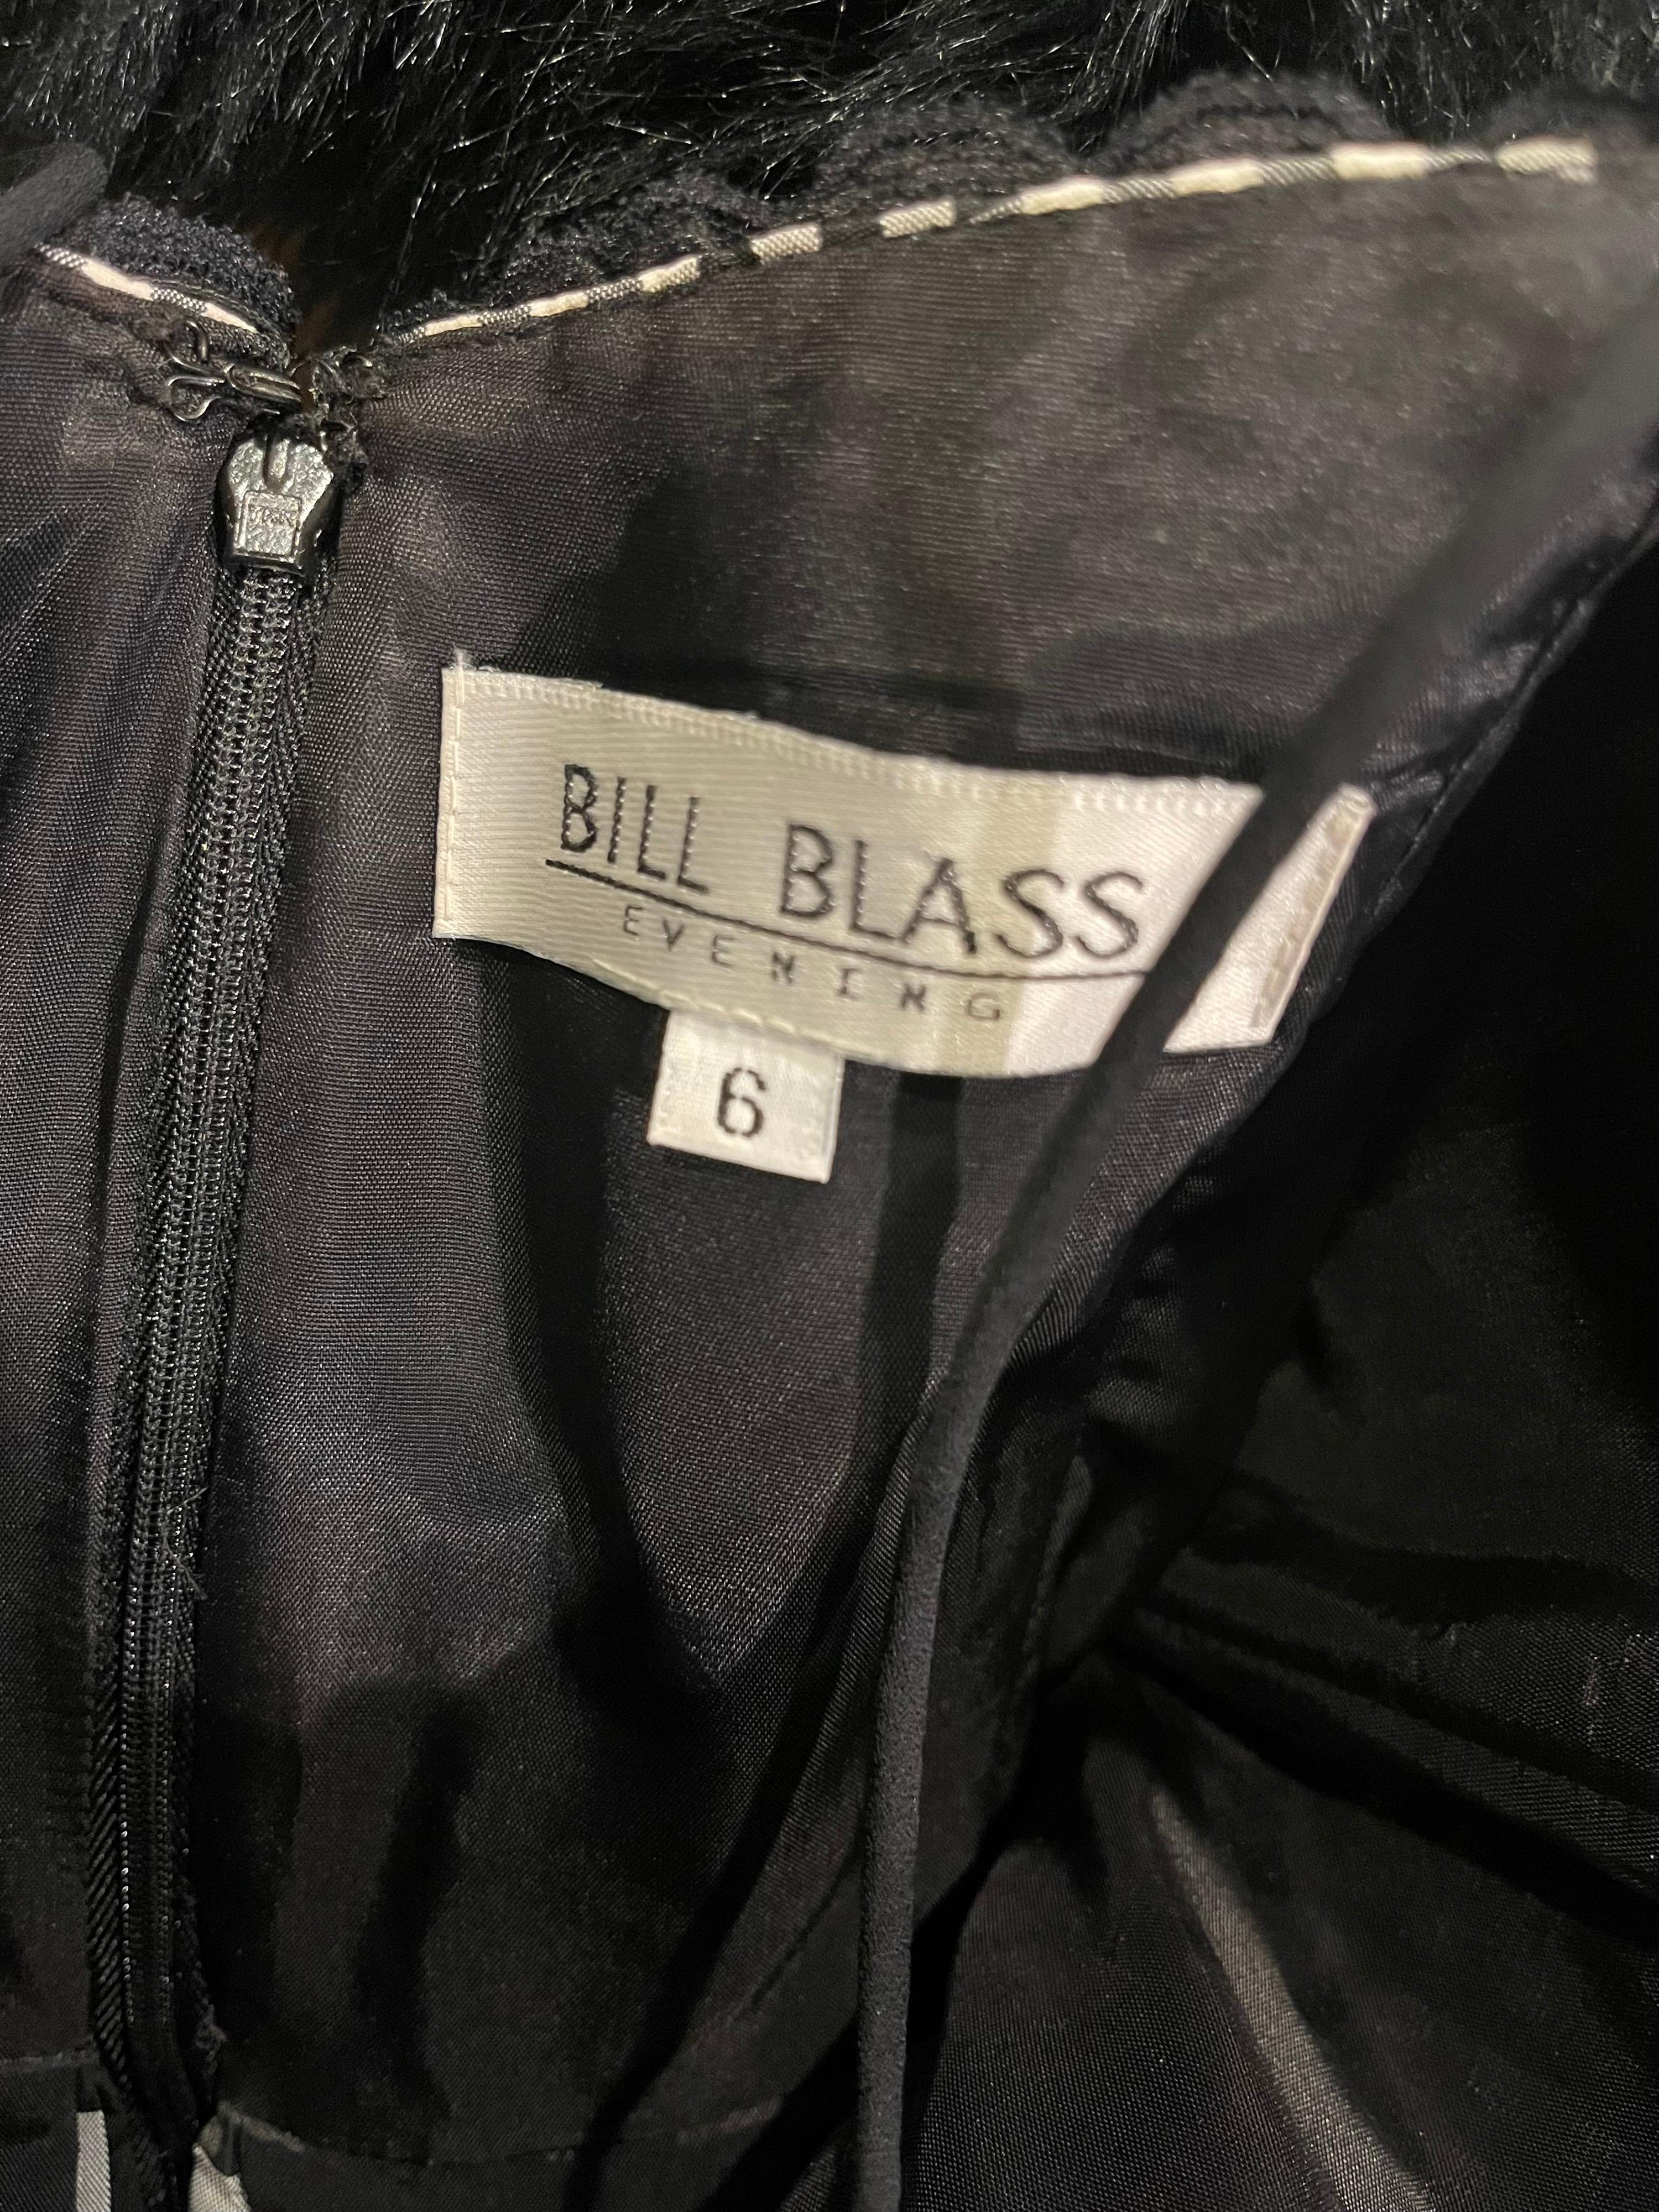 Bill Blass Vintage-Kleid aus Seidentaft in Schwarz und Weiß, 1980er Jahre, Größe 6 im Angebot 12